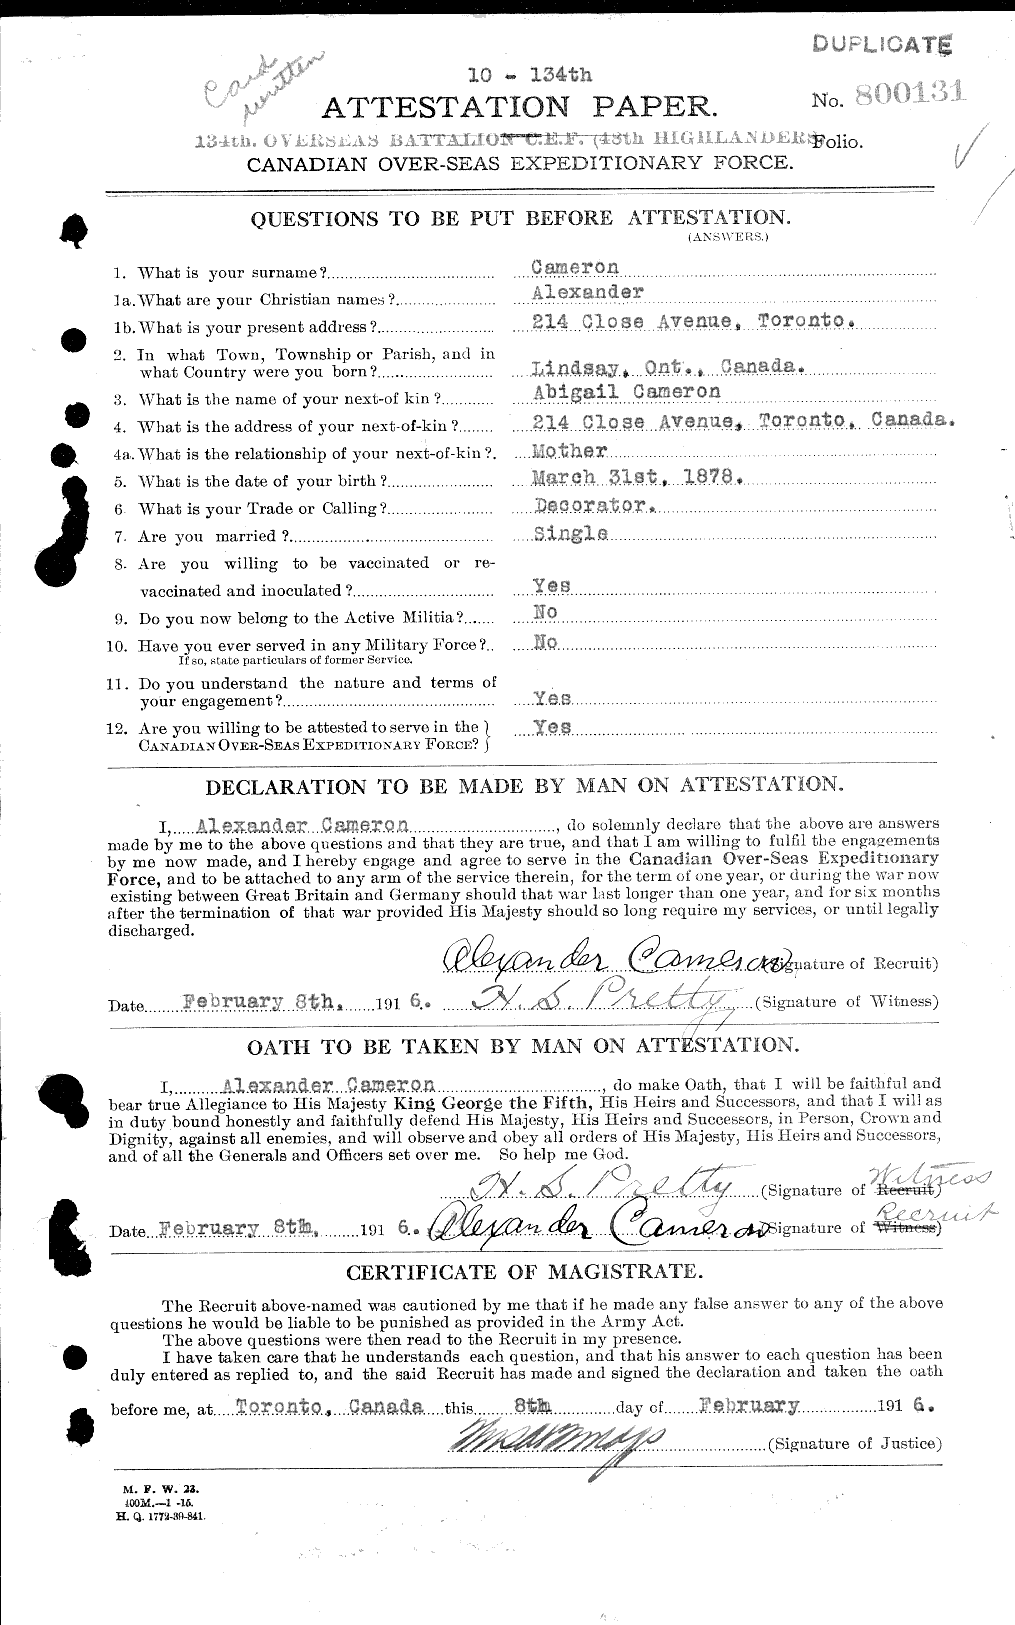 Dossiers du Personnel de la Première Guerre mondiale - CEC 000792a